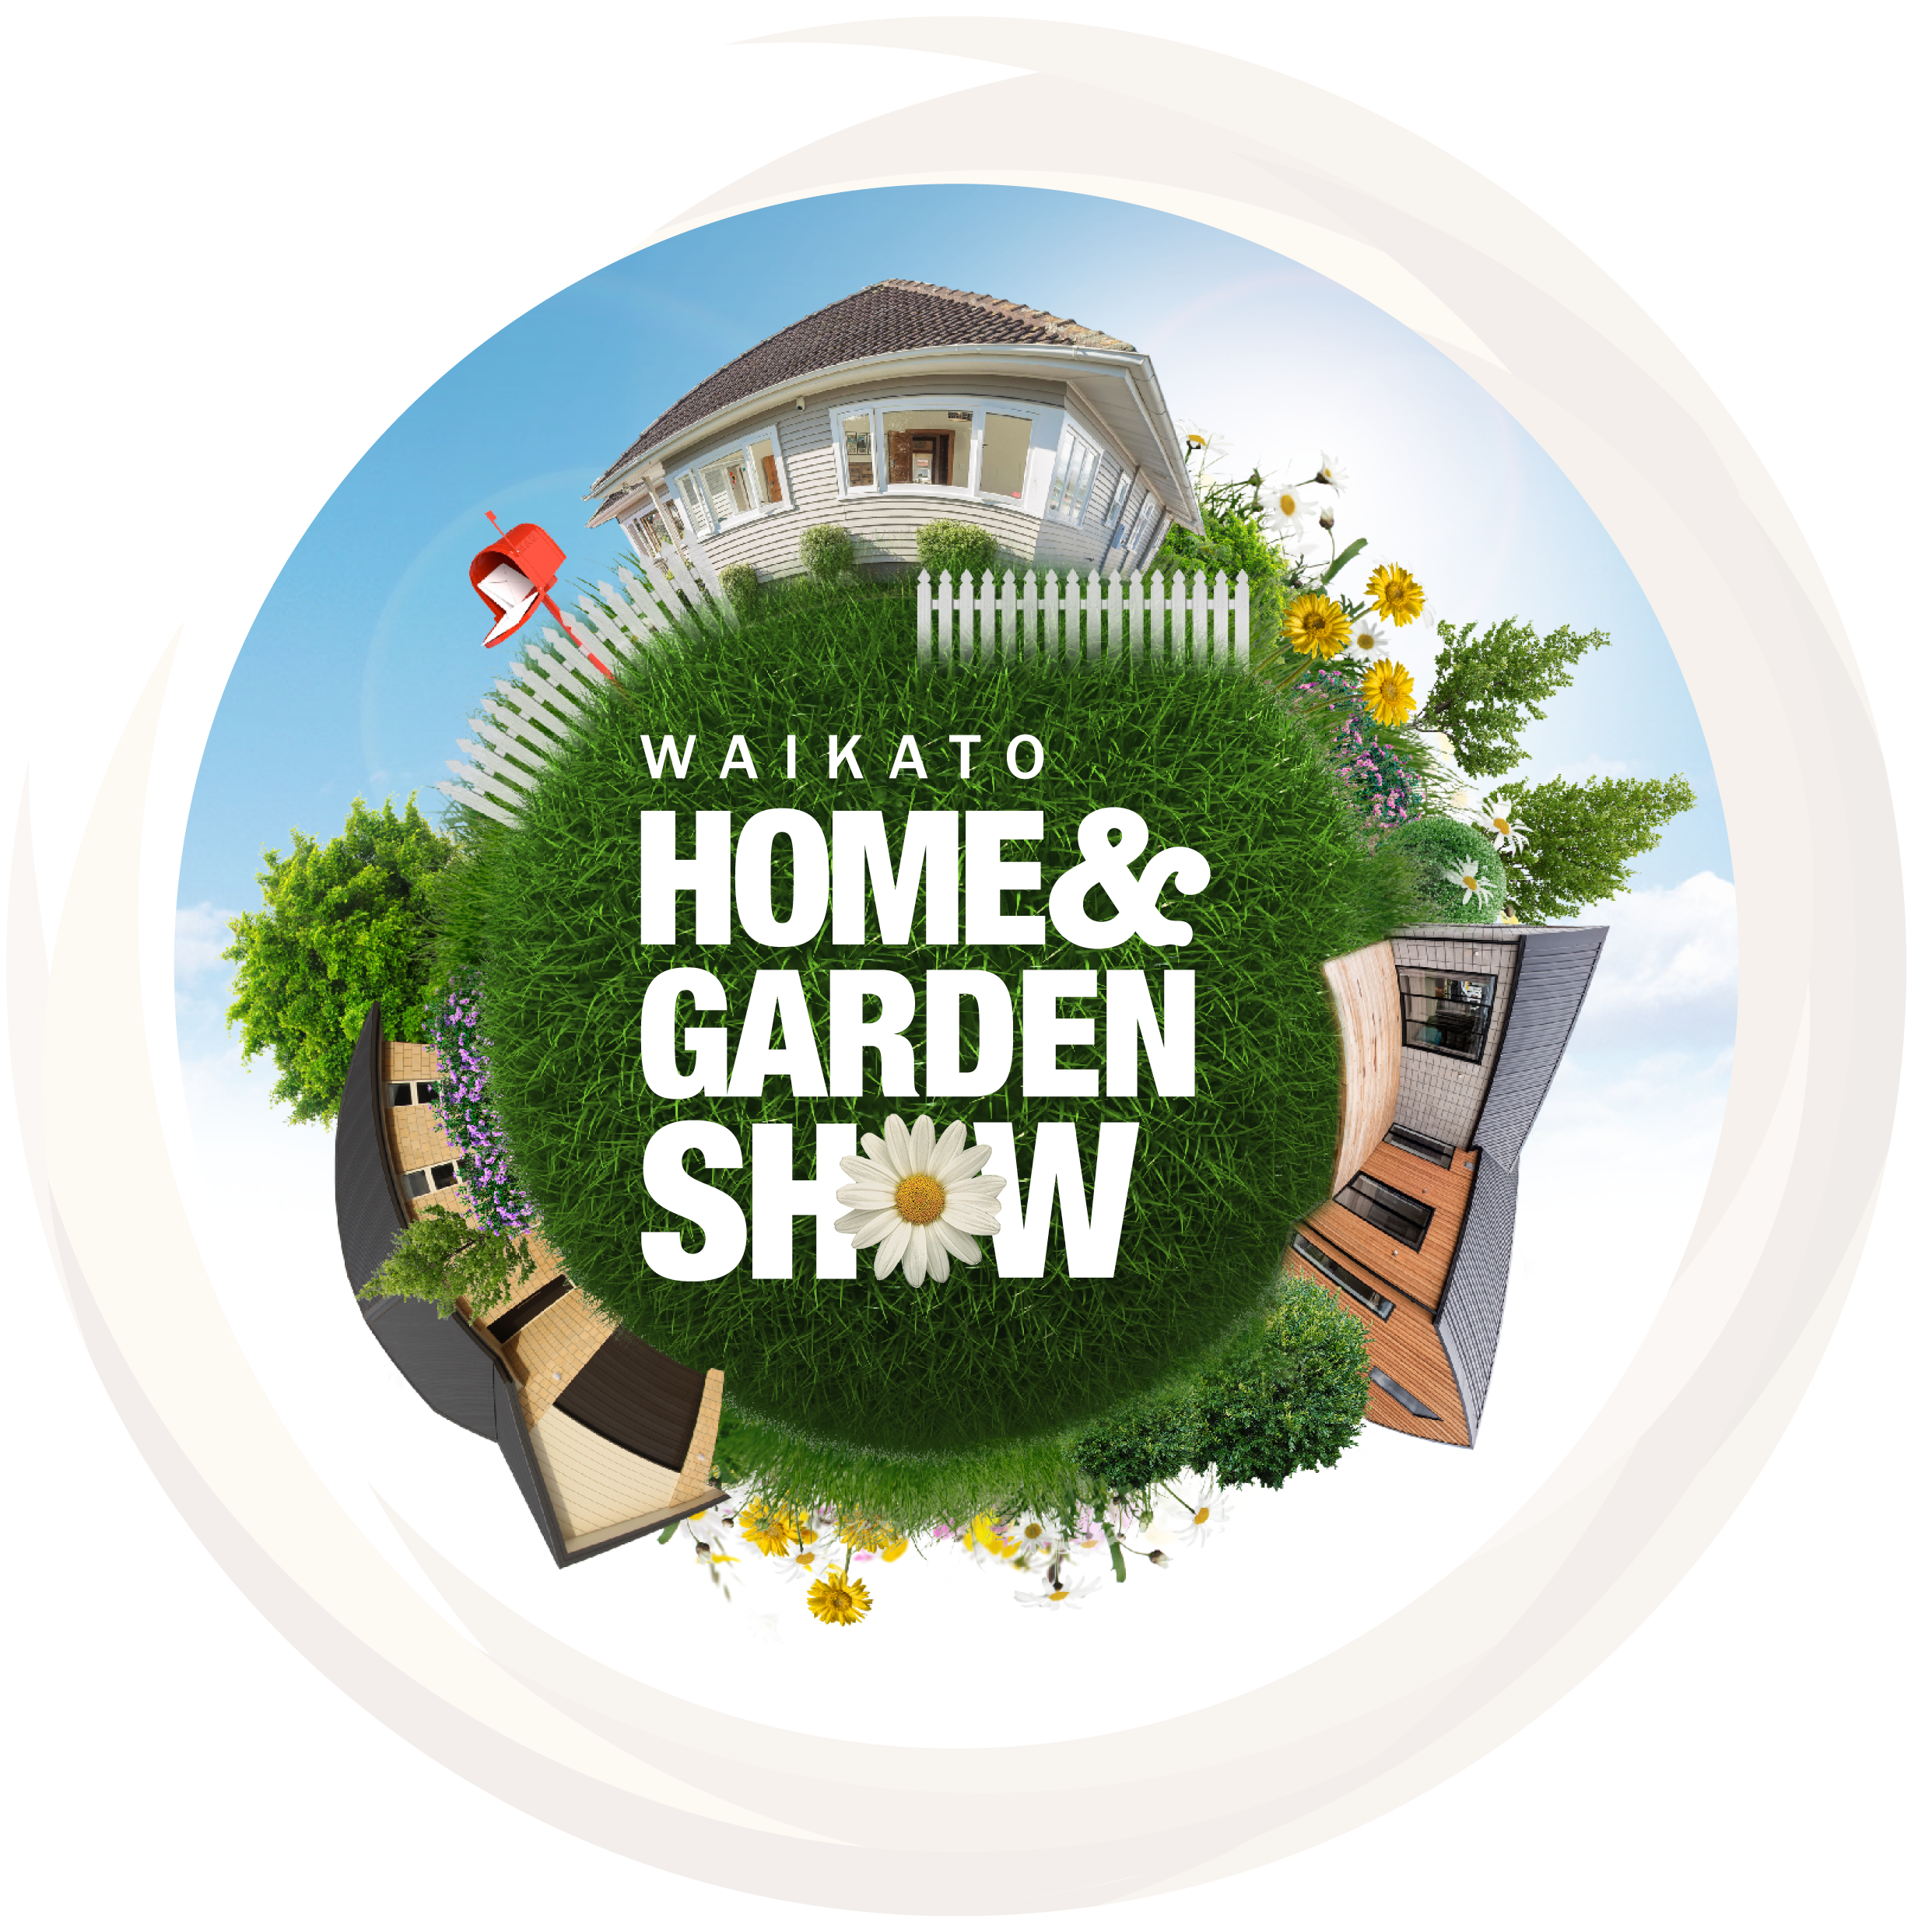 Contact sales for the Waikato Home & Garden Show